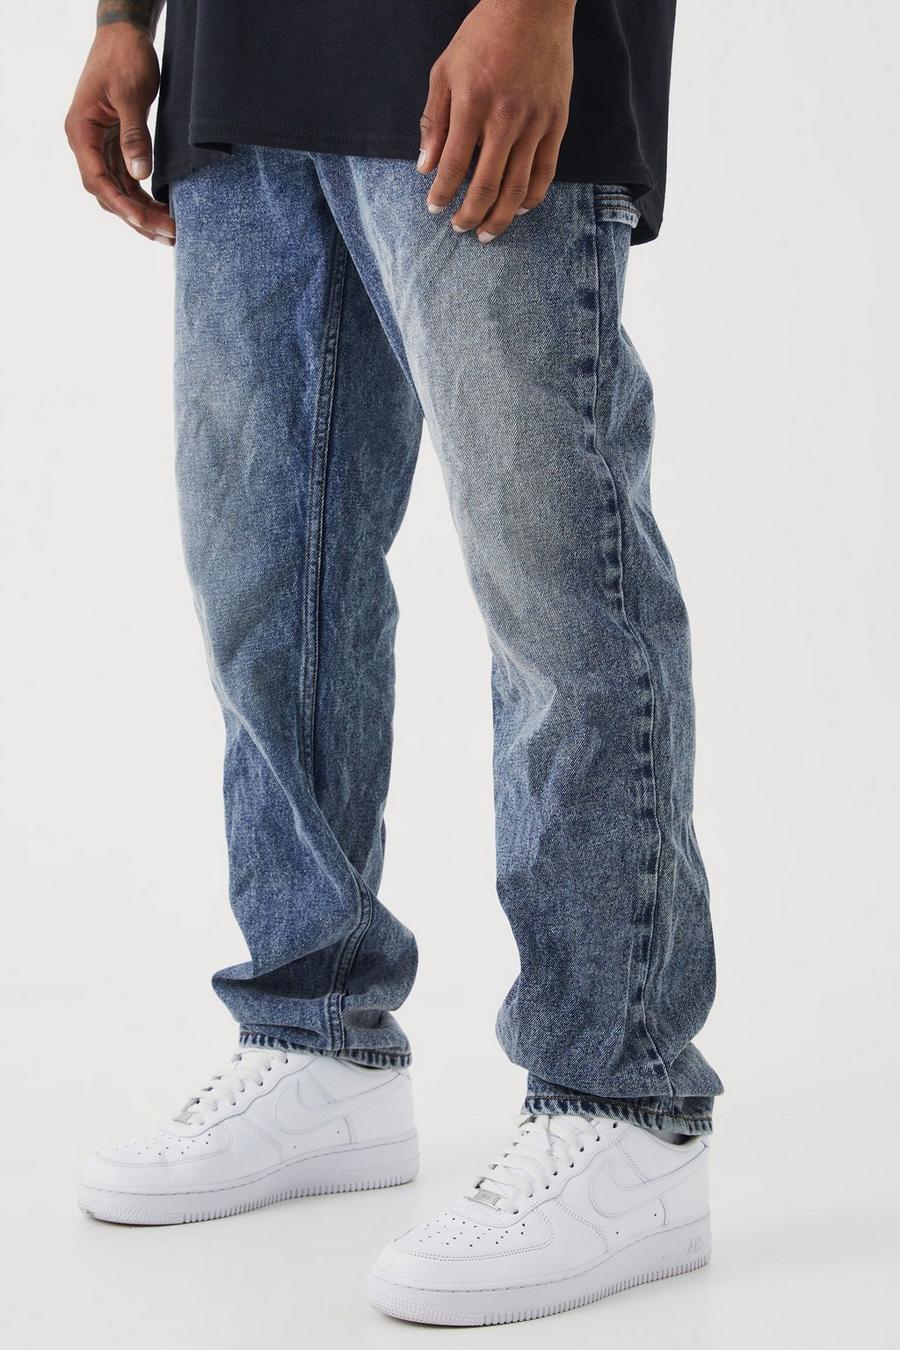 Jeans mit geradem Bein, Antique wash bleu